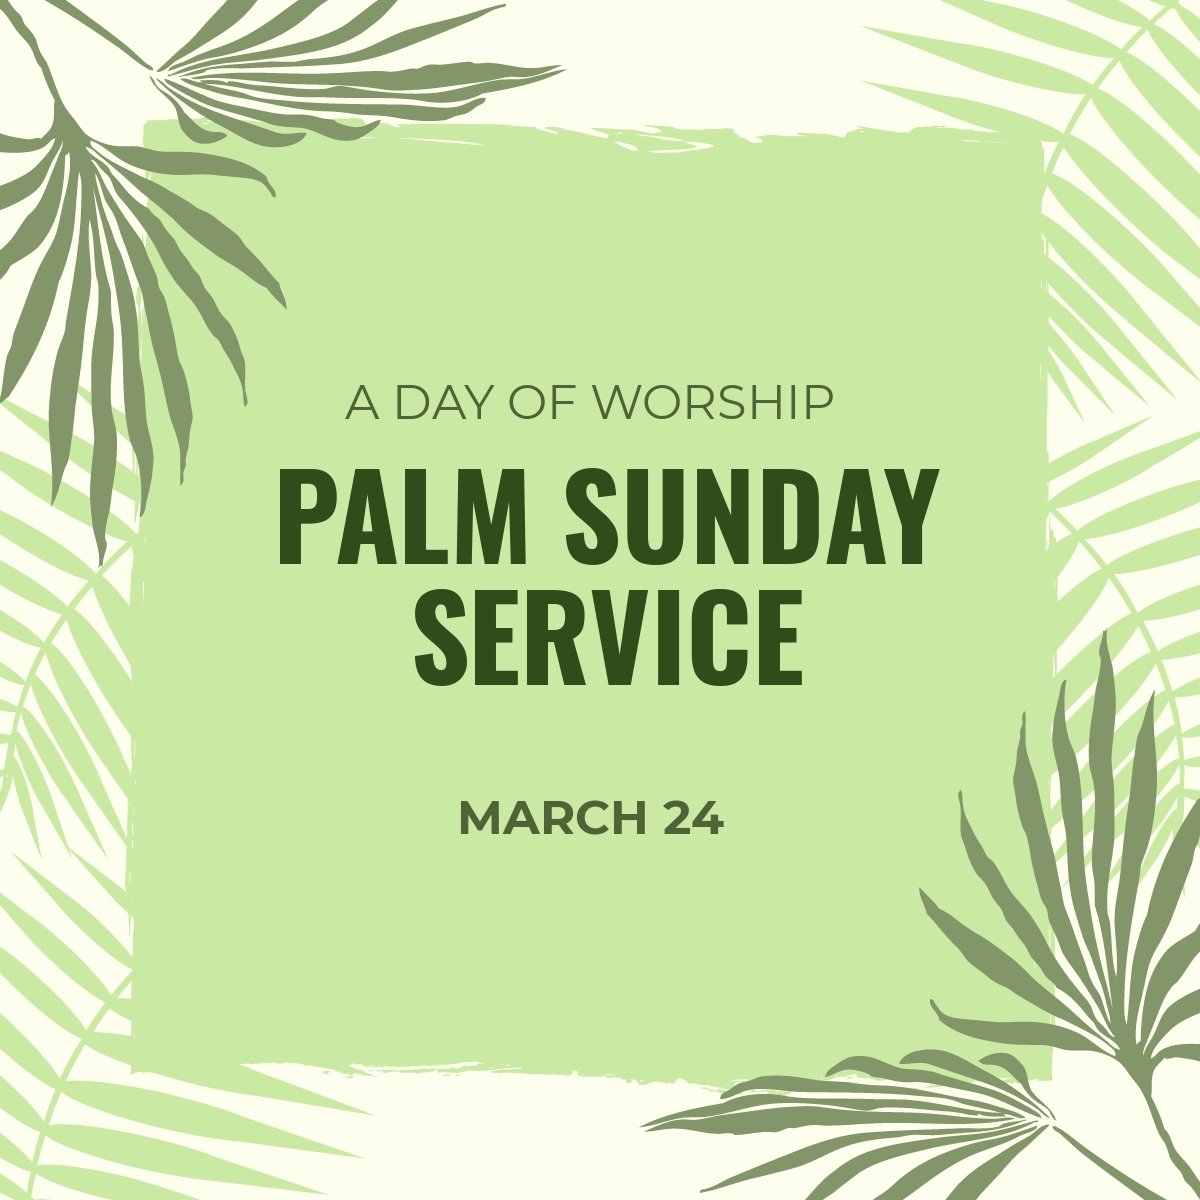 Palm Sunday Service Linkedin Post Template